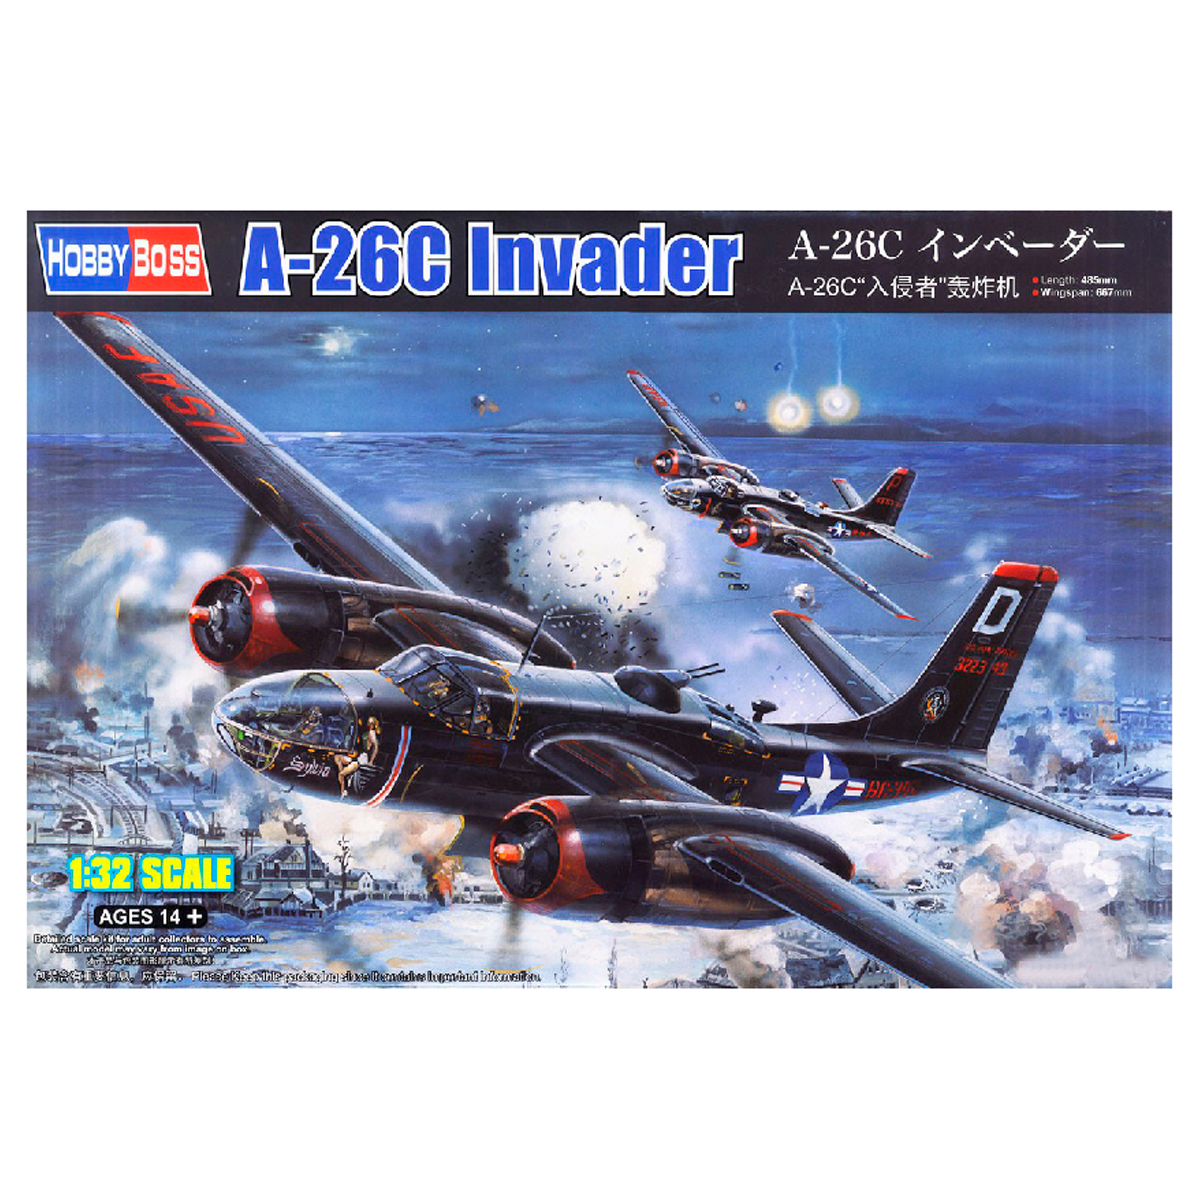 A-26C Invader 1/32